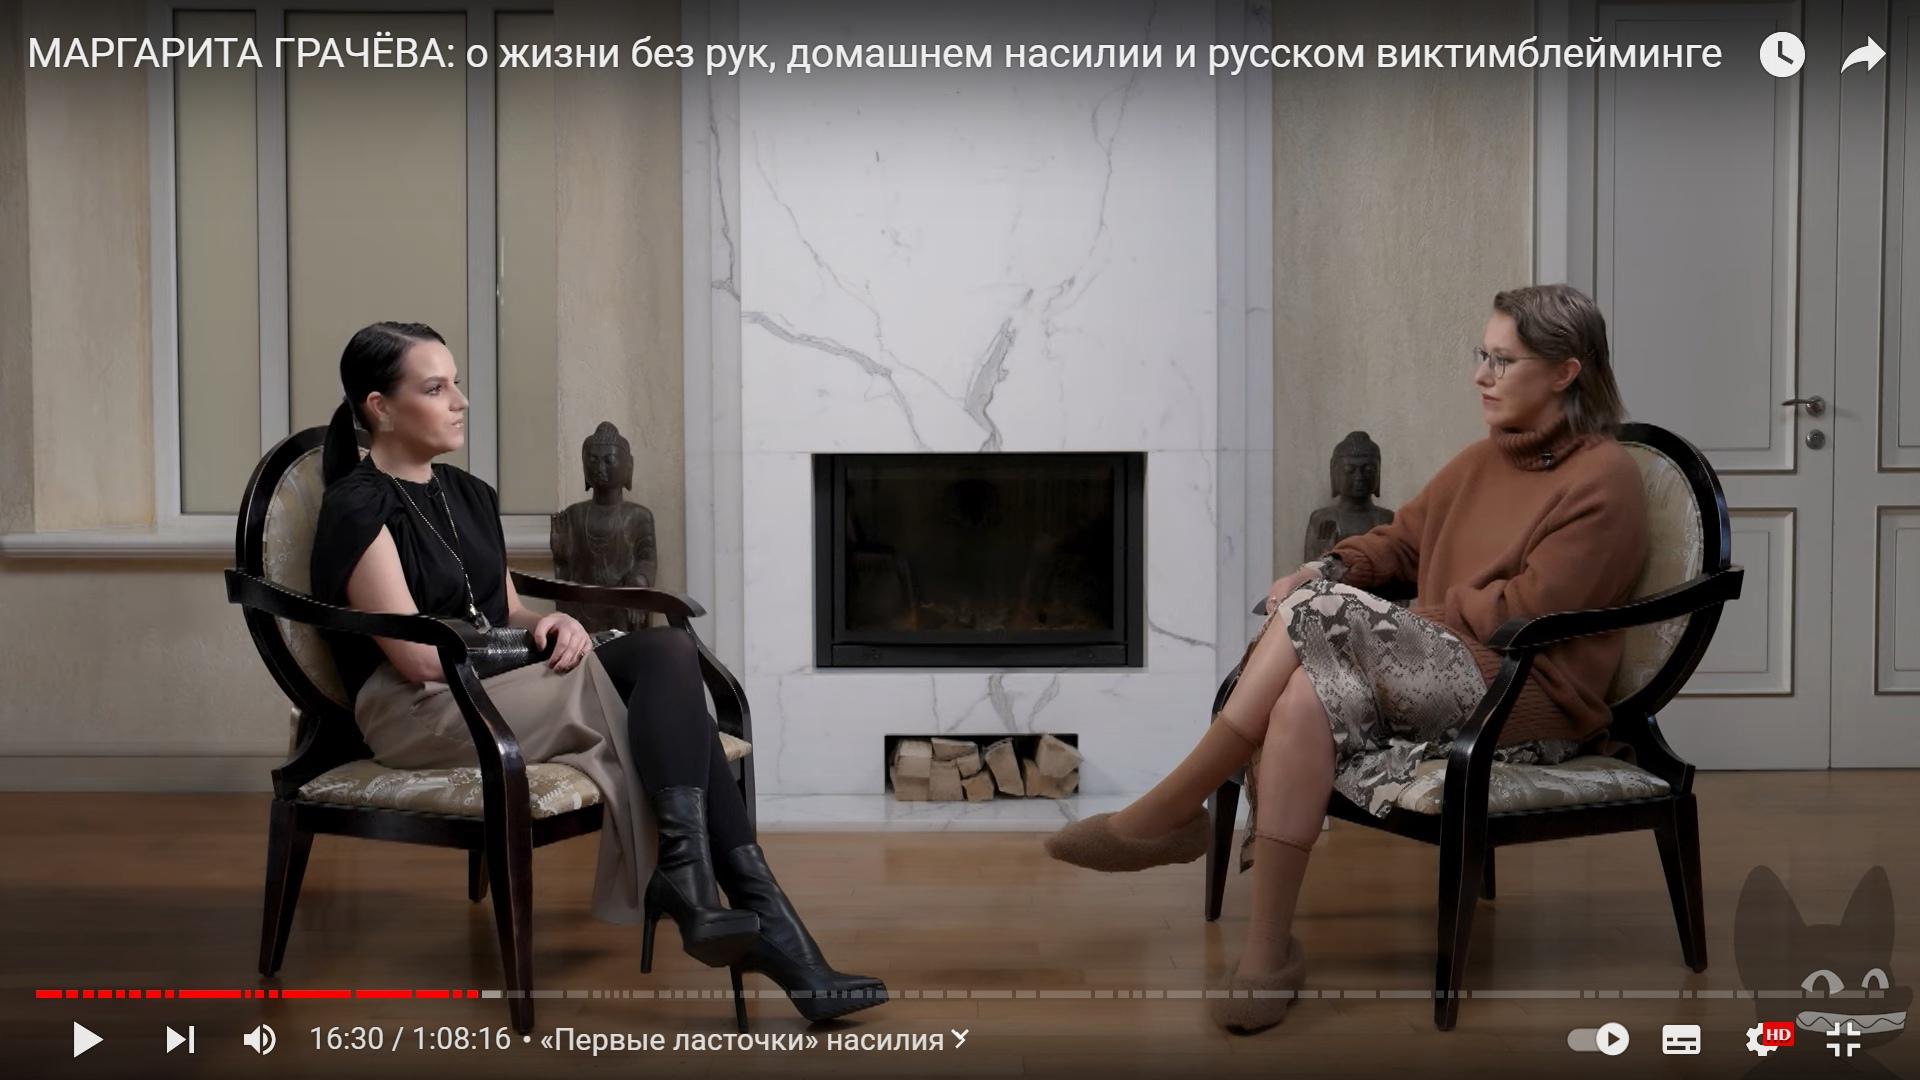 Защиты от государства нет»: главное из нового интервью жертвы домашнего  насилия Маргариты Грачевой | PSYCHOLOGIES